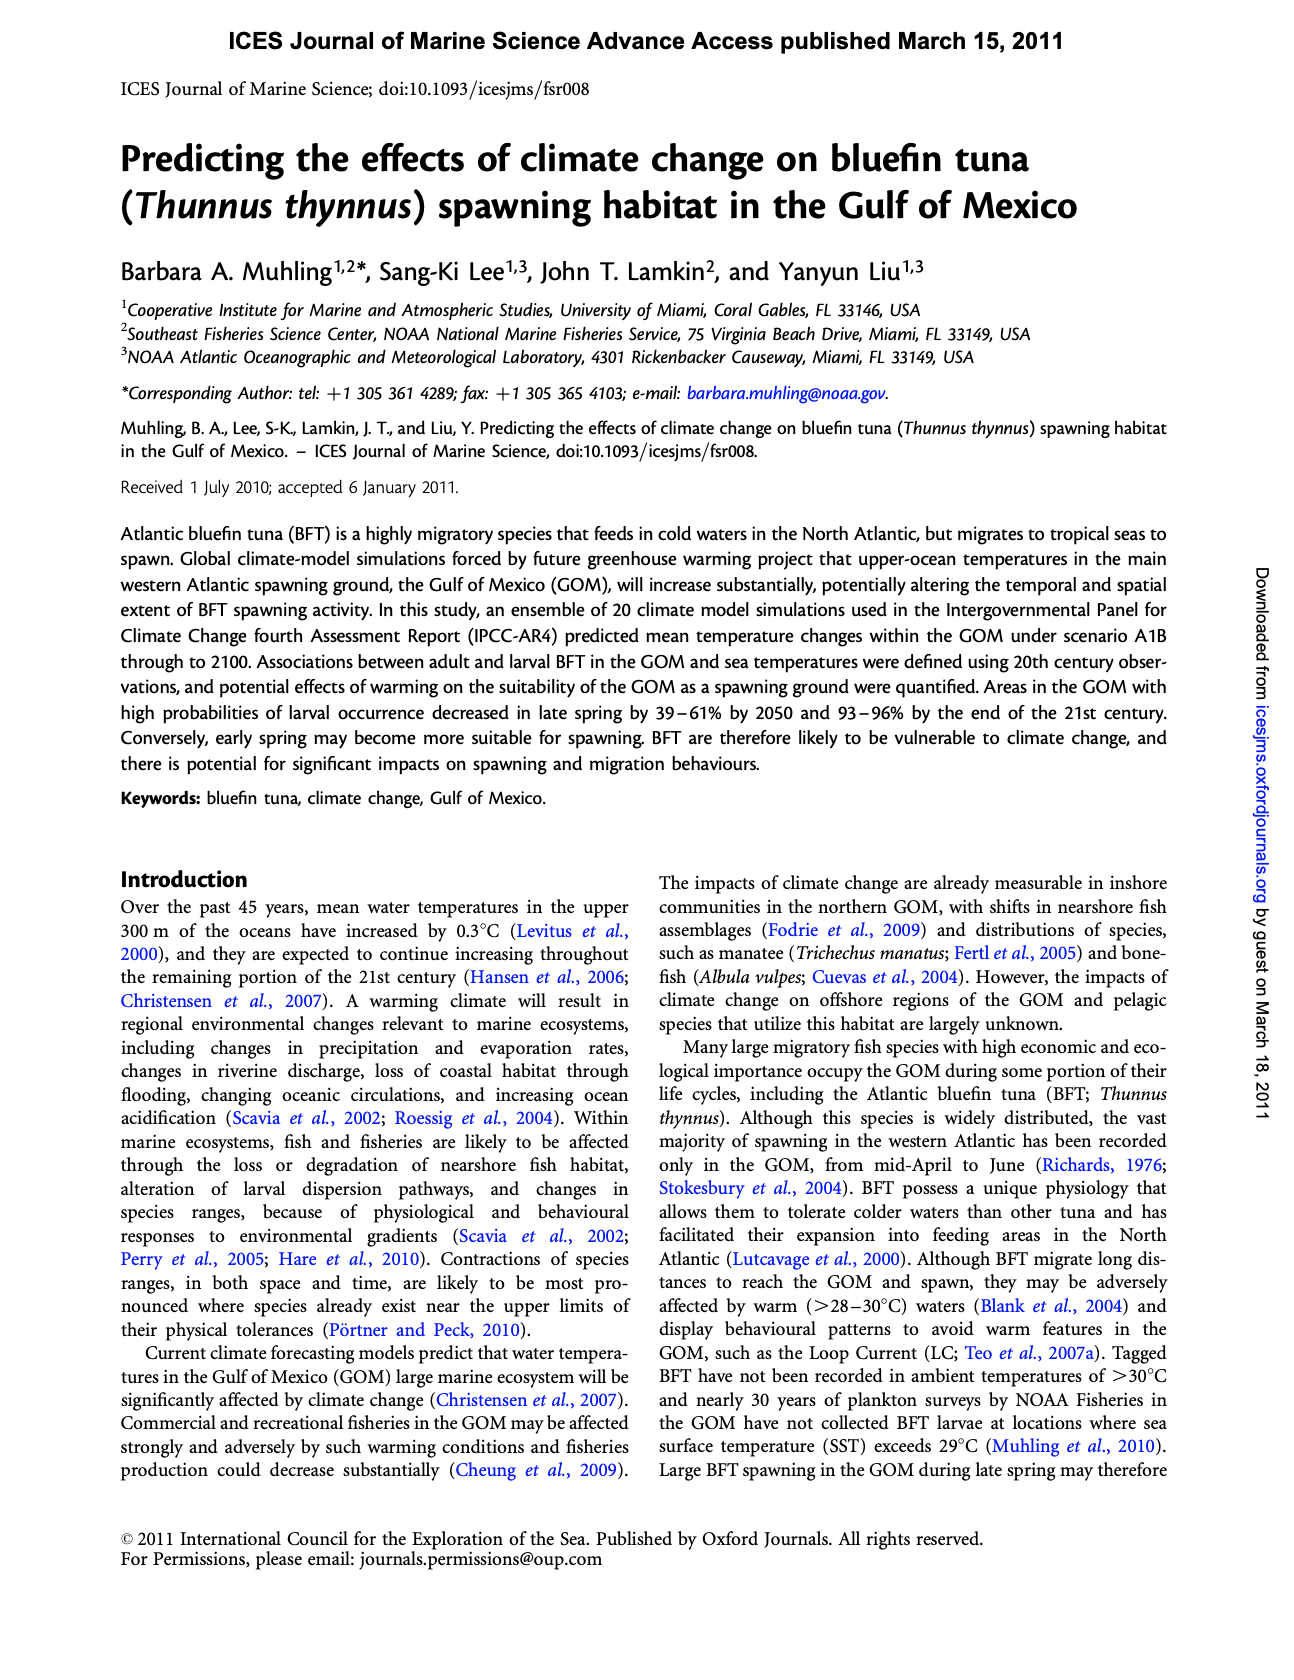 Muhling, B. A., S.-K. Lee, J. T. Lamkin y Y. Liu, 2011. Predicción de los efectos del cambio climático en el hábitat de desove del atún rojo (Thunnus thynnus) en el Golfo de México. ICES Journal of Marine Science, doi:10.1093/icesjms/fsr008